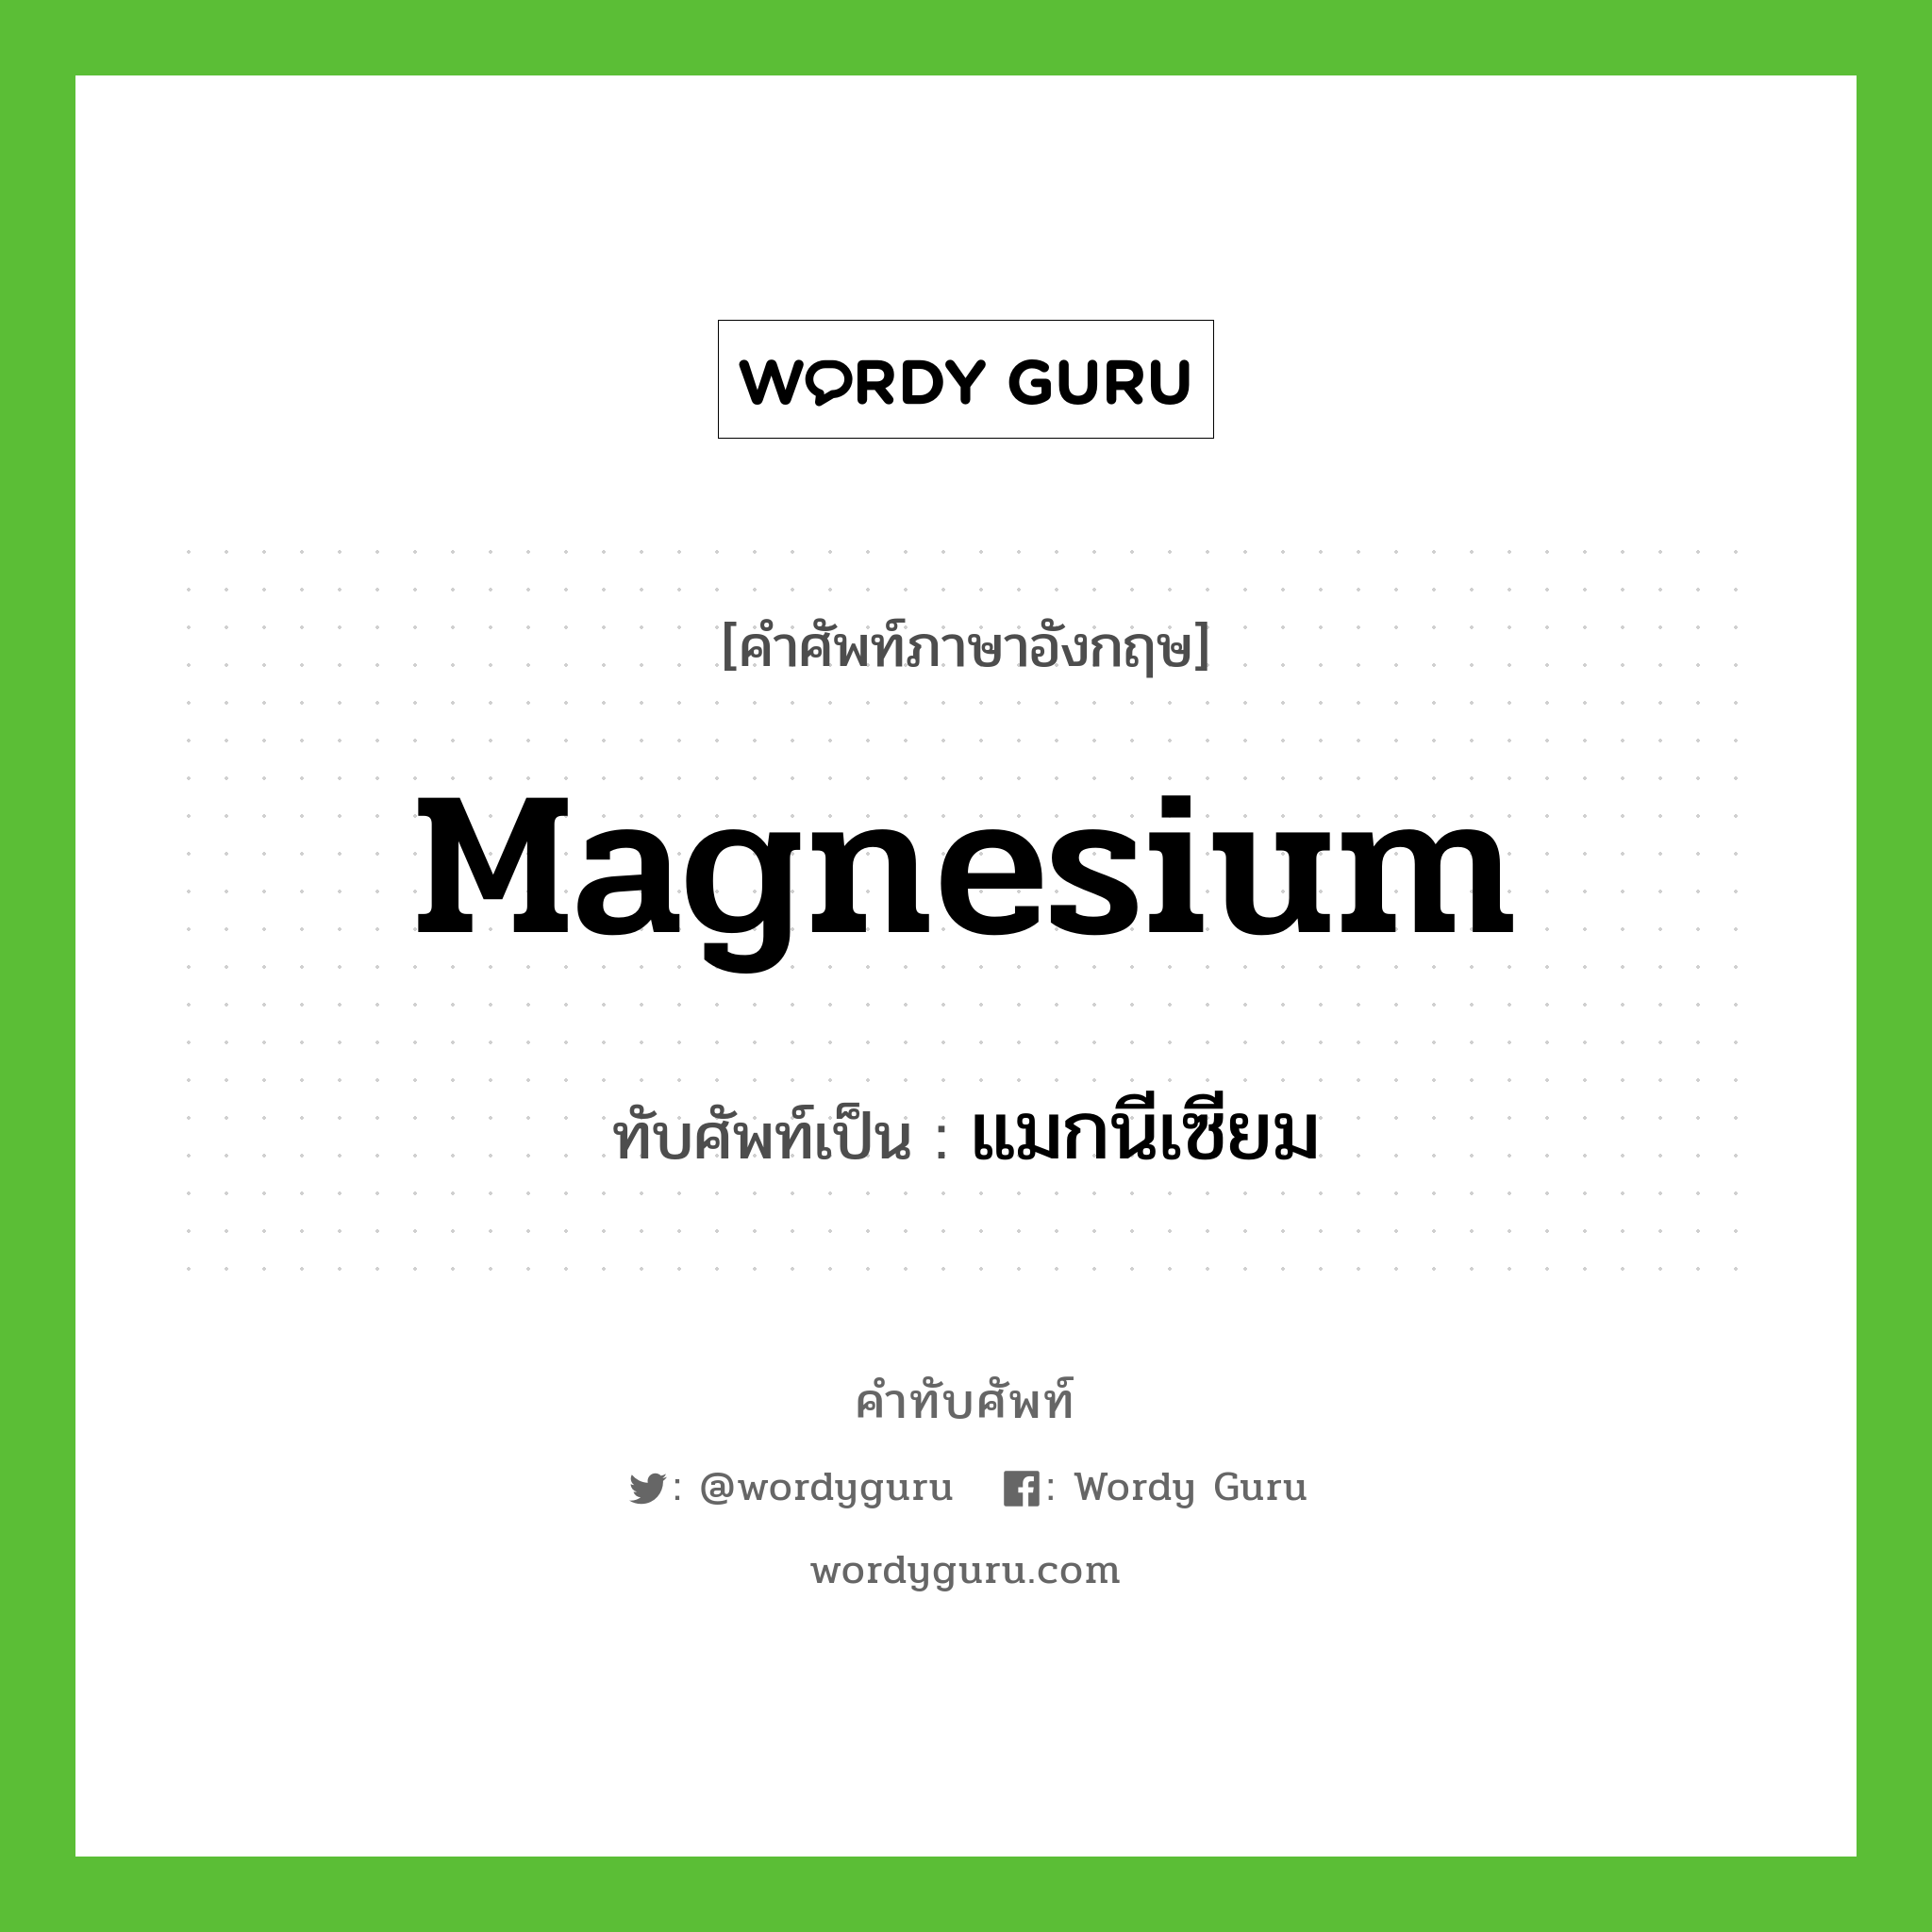 แมกนีเซียม เขียนอย่างไร?, คำศัพท์ภาษาอังกฤษ แมกนีเซียม ทับศัพท์เป็น magnesium